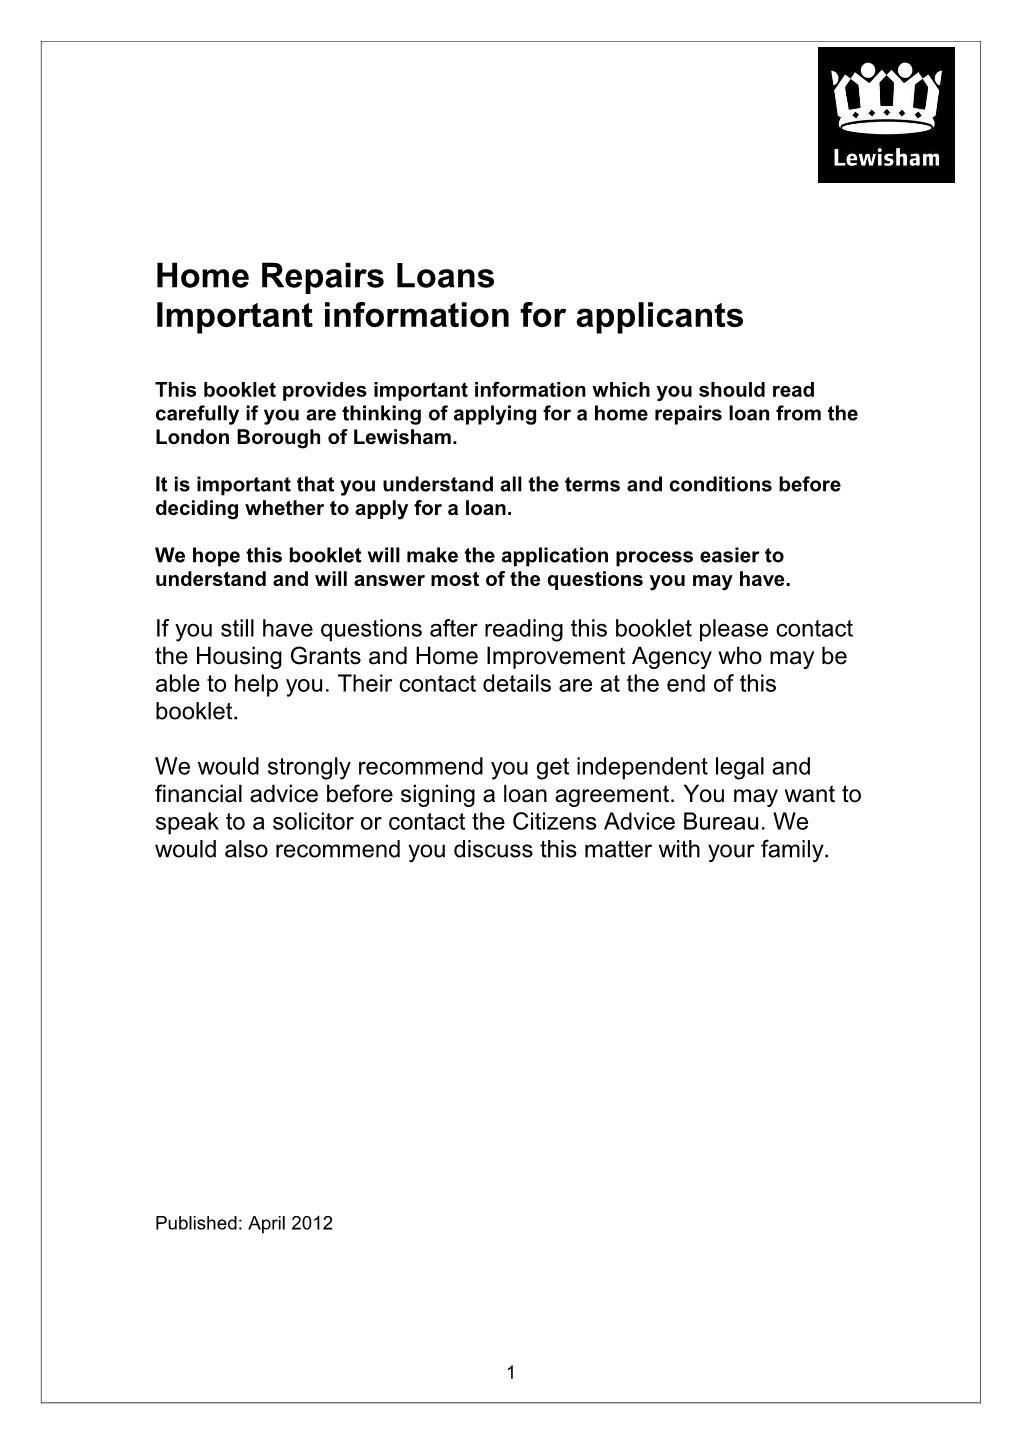 Home Repairs Loans